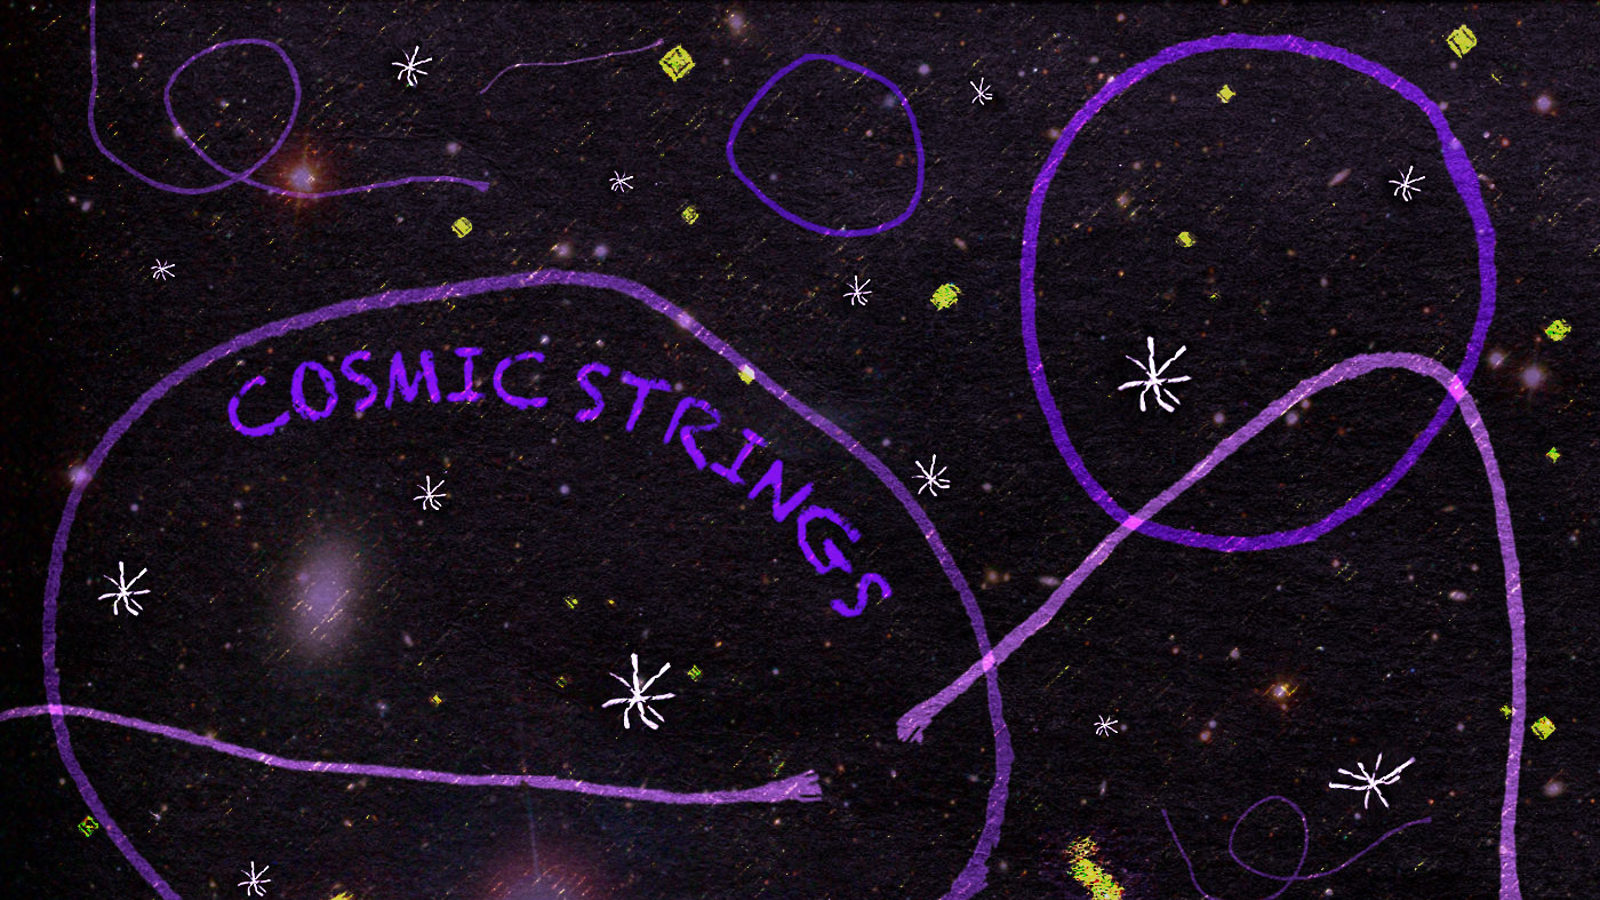 Illustration of "Cosmic Strings" purple strings in space